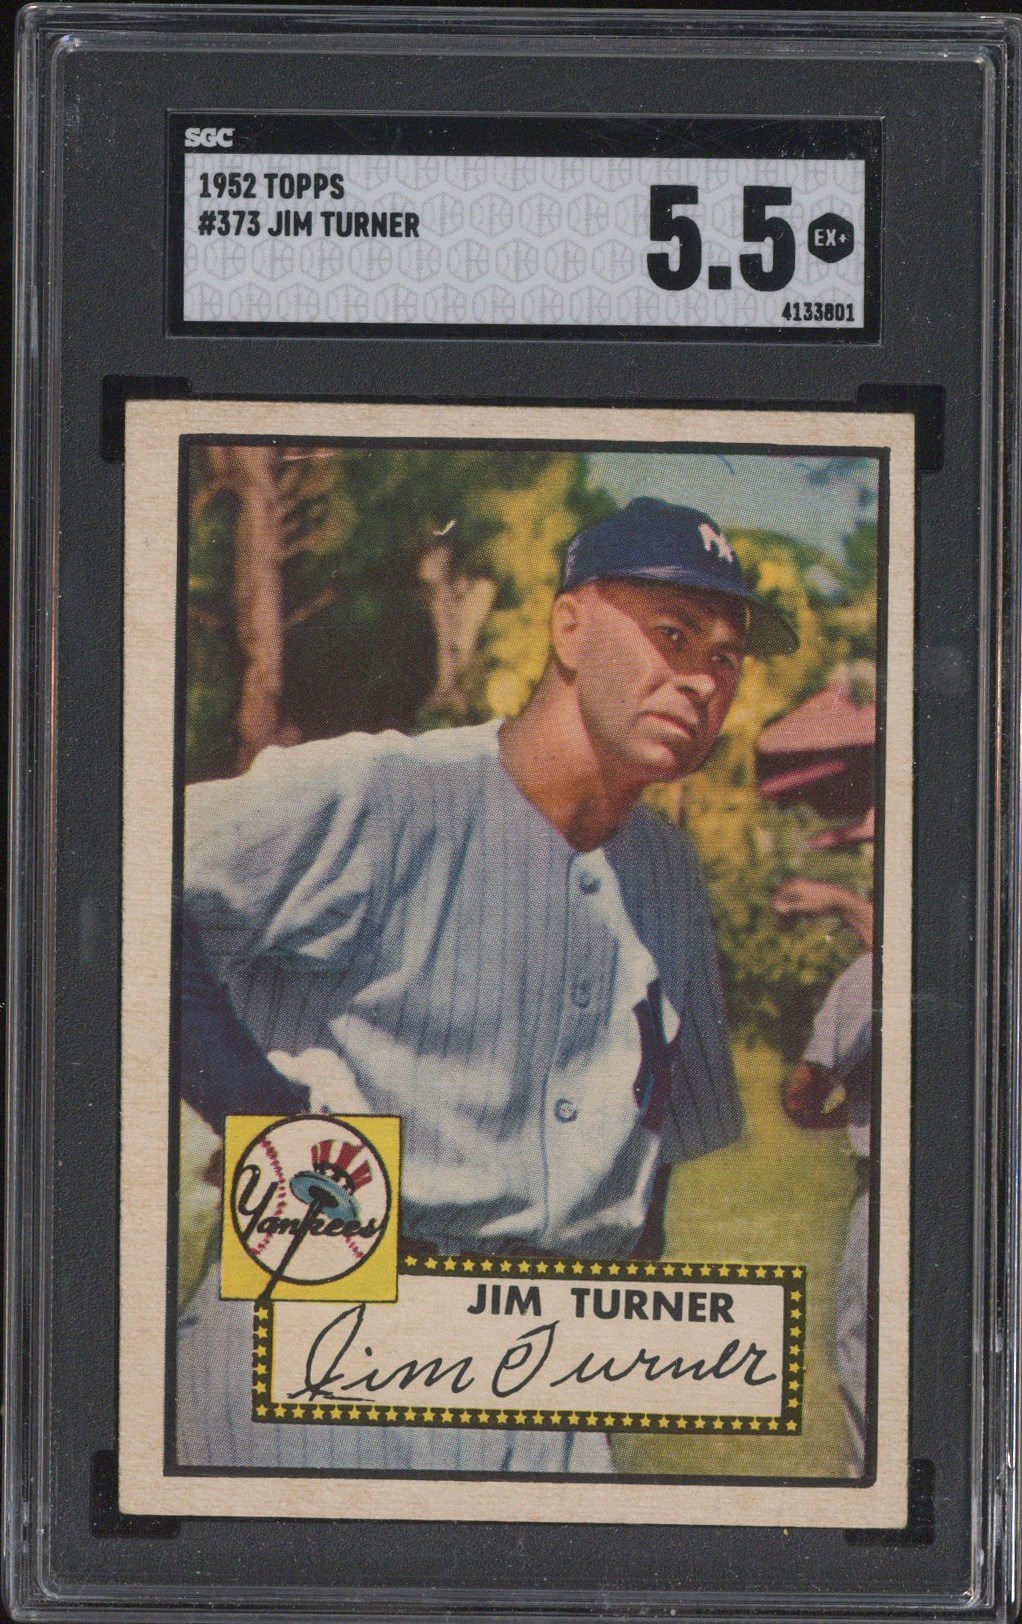 1952 Topps #373 Jim Turner - SGC EX+ 5.5